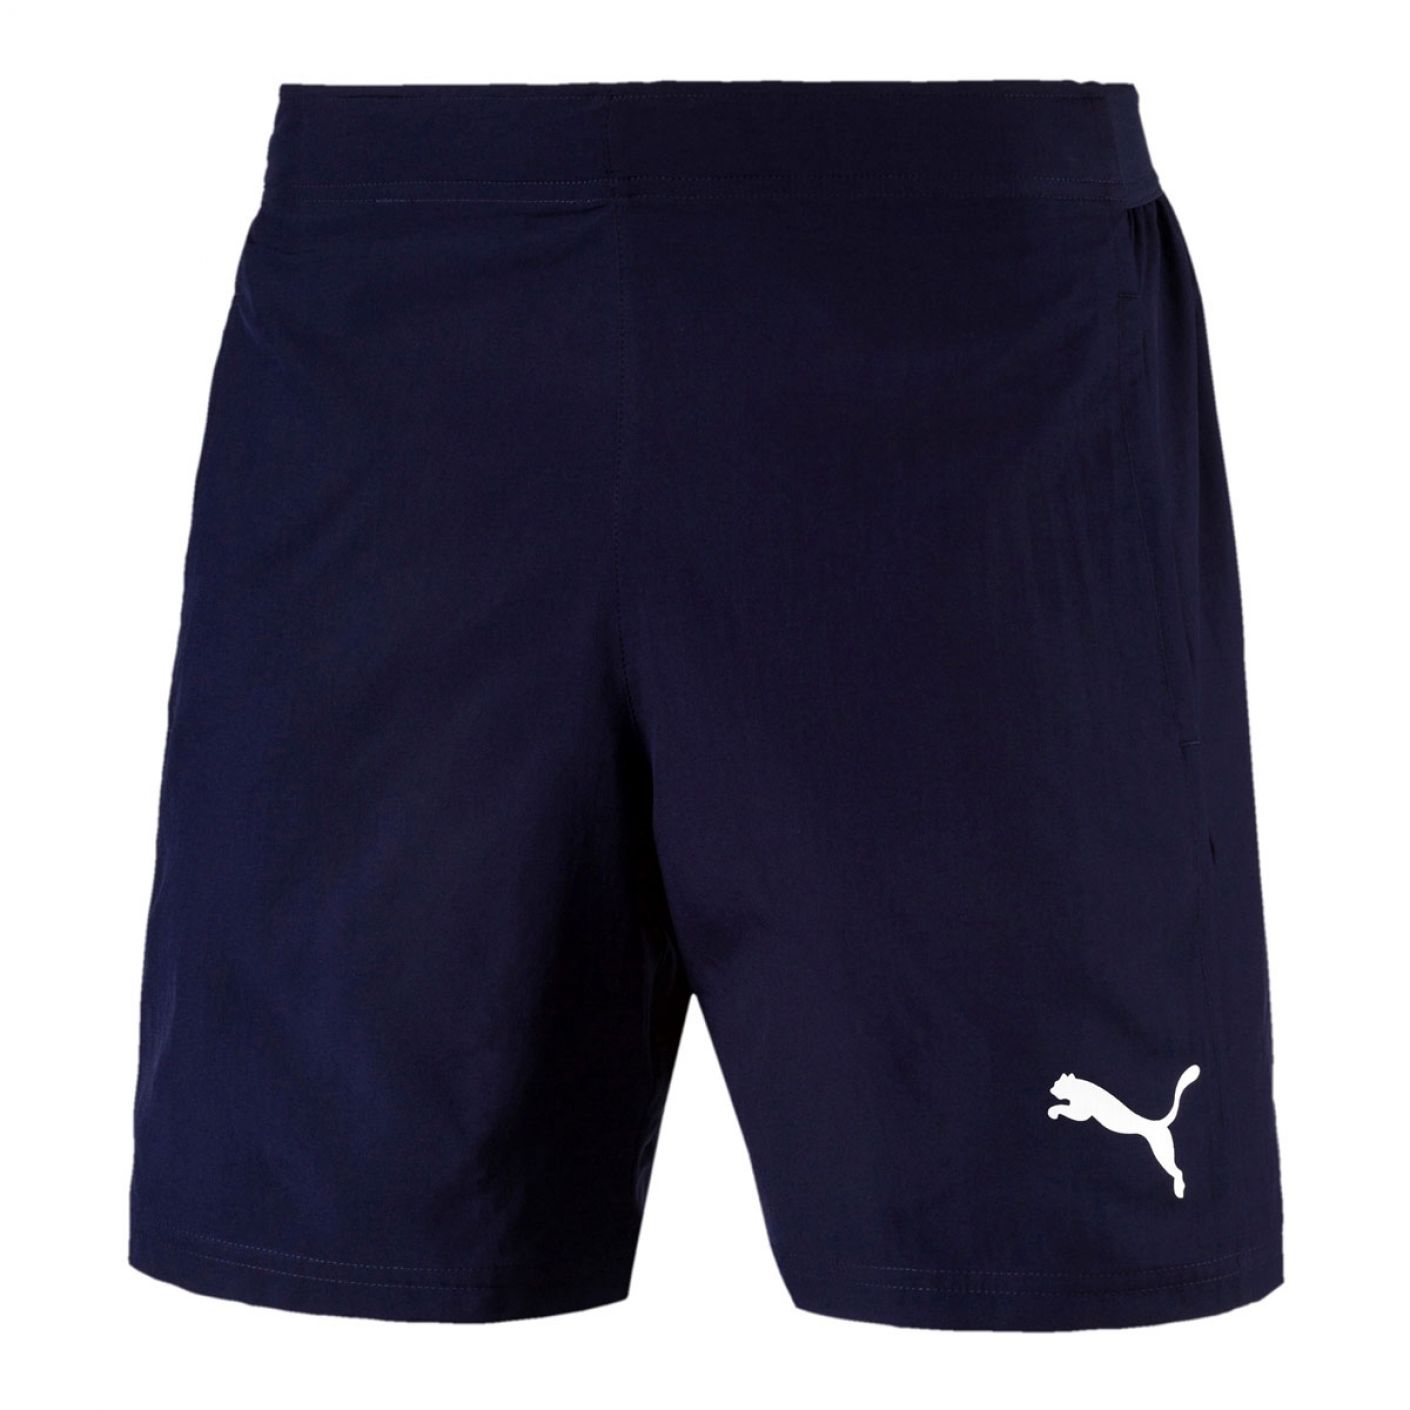 Puma - Liga sideline woven shorts # 06 655318